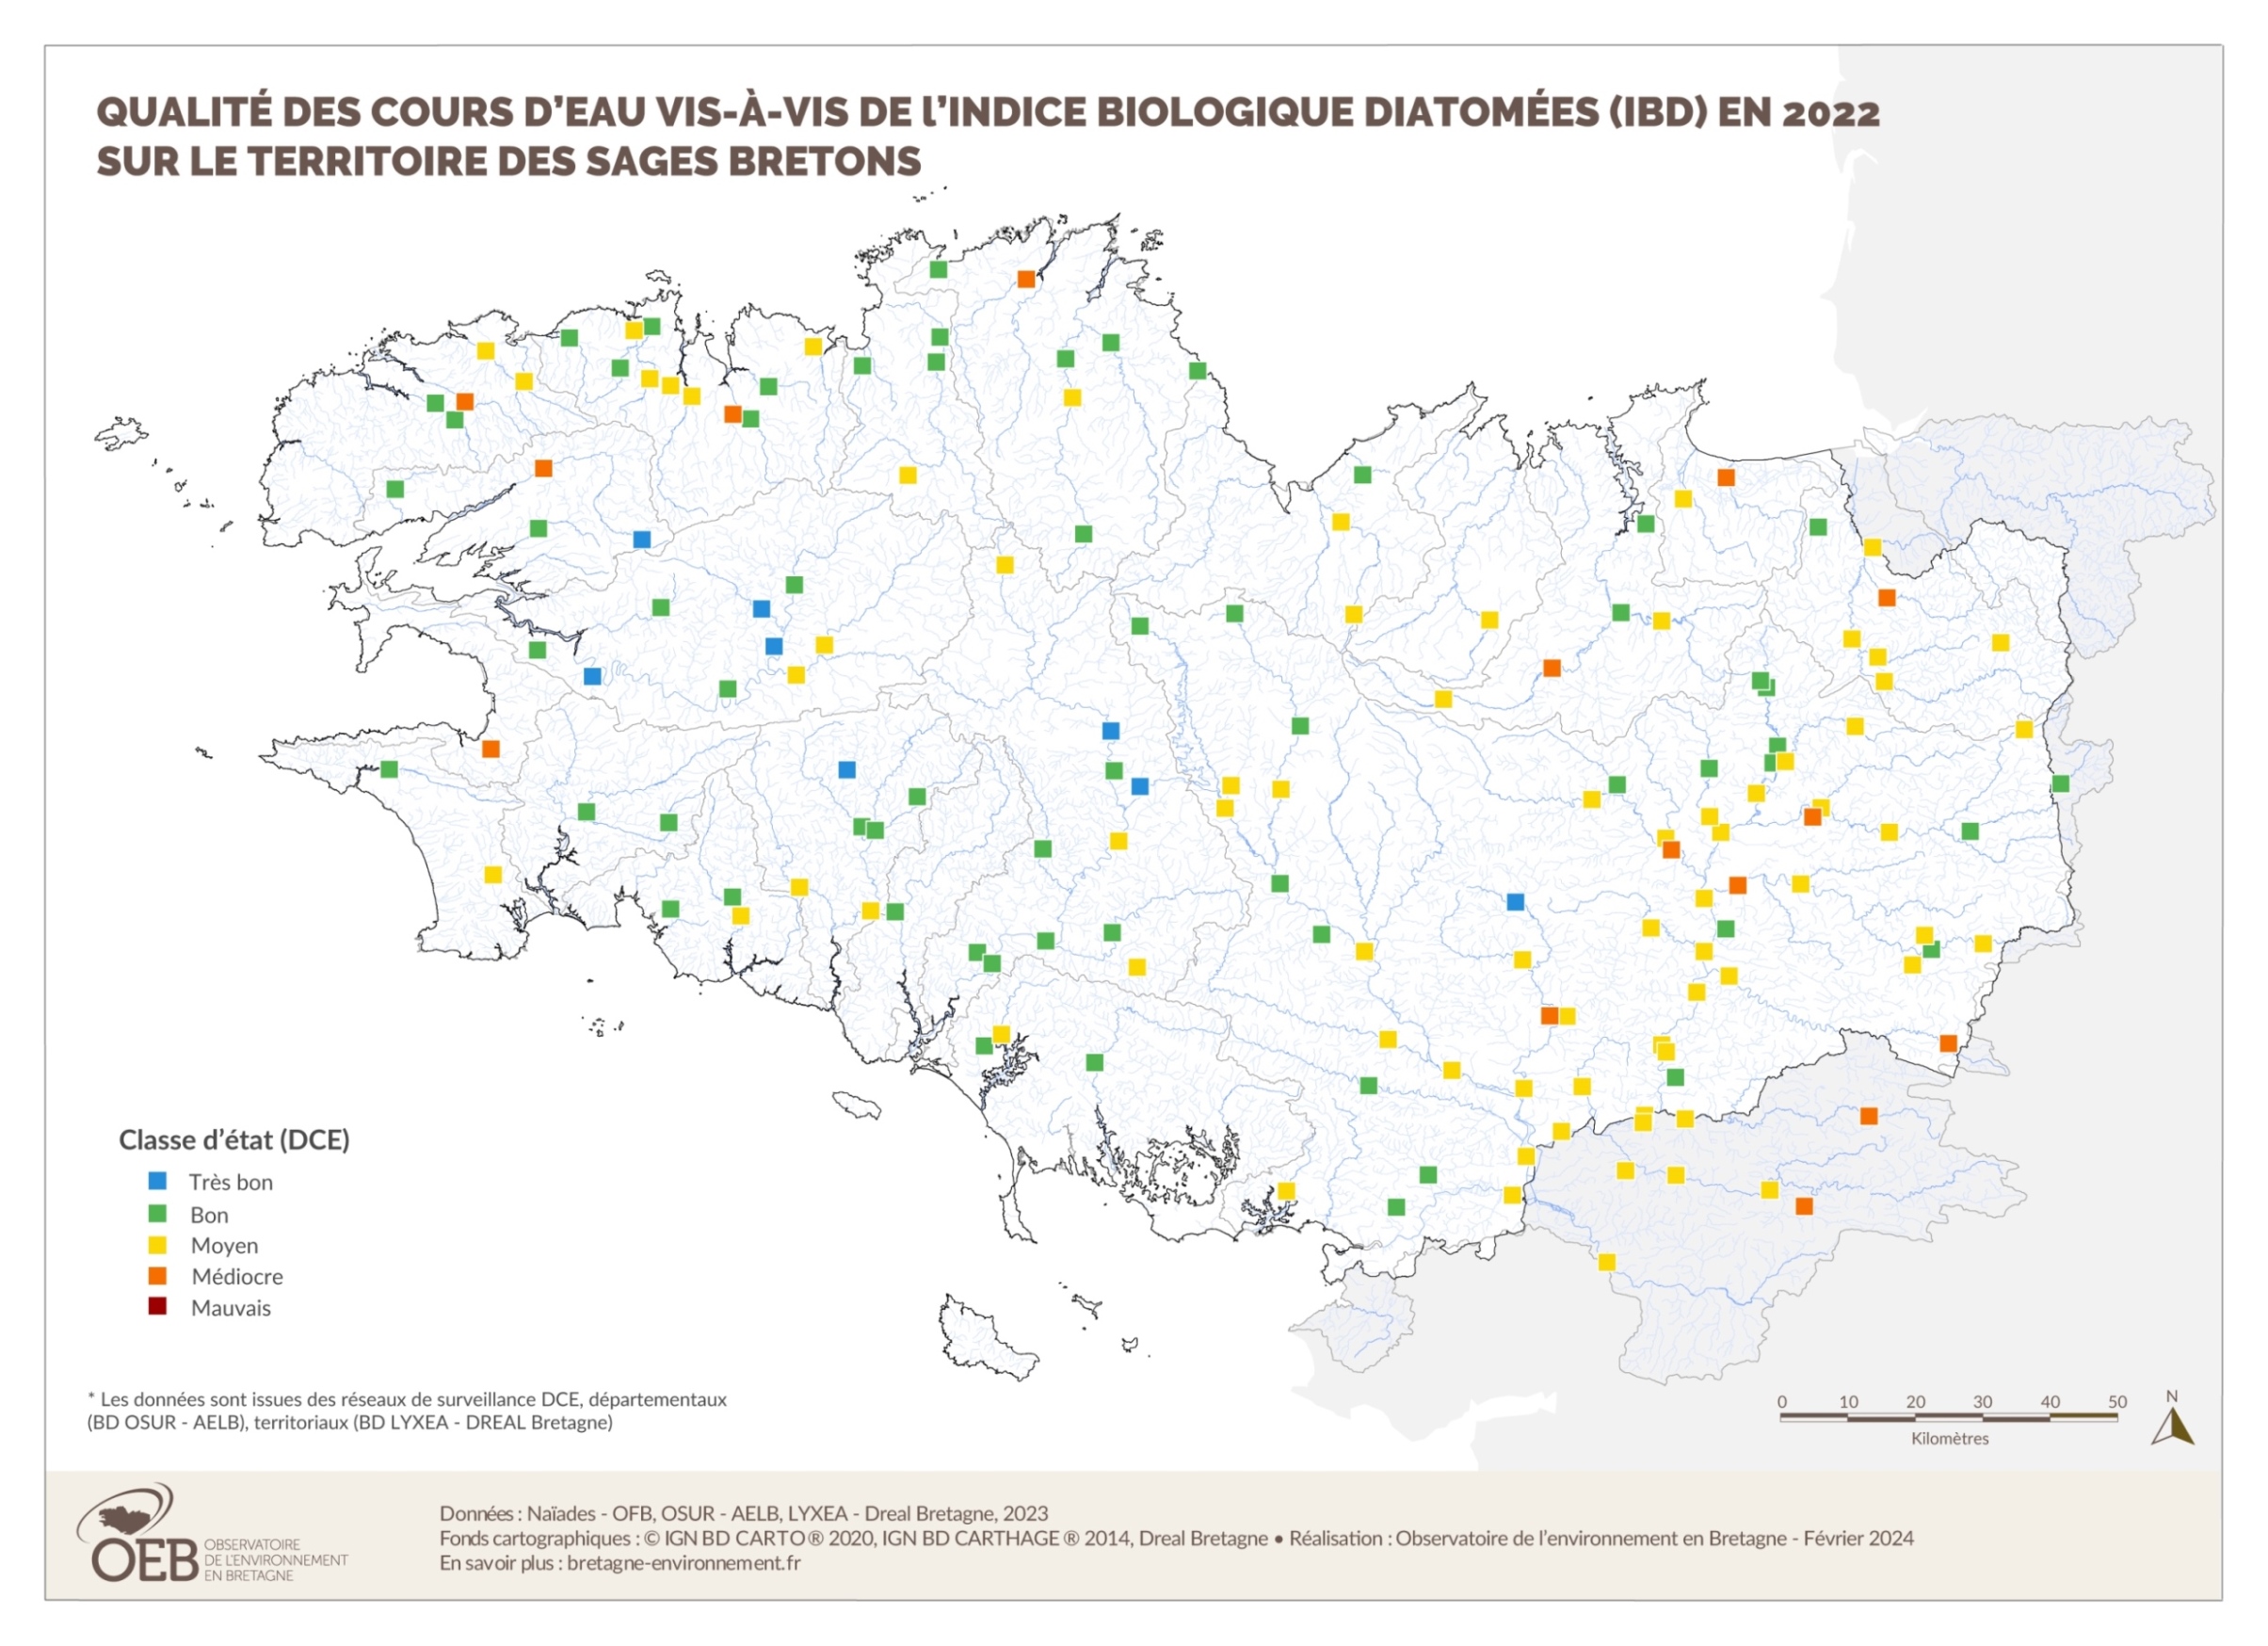 Qualité des cours d'eau bretons vis-à-vis de l'indice biologique diatomées (IBD) en 2022